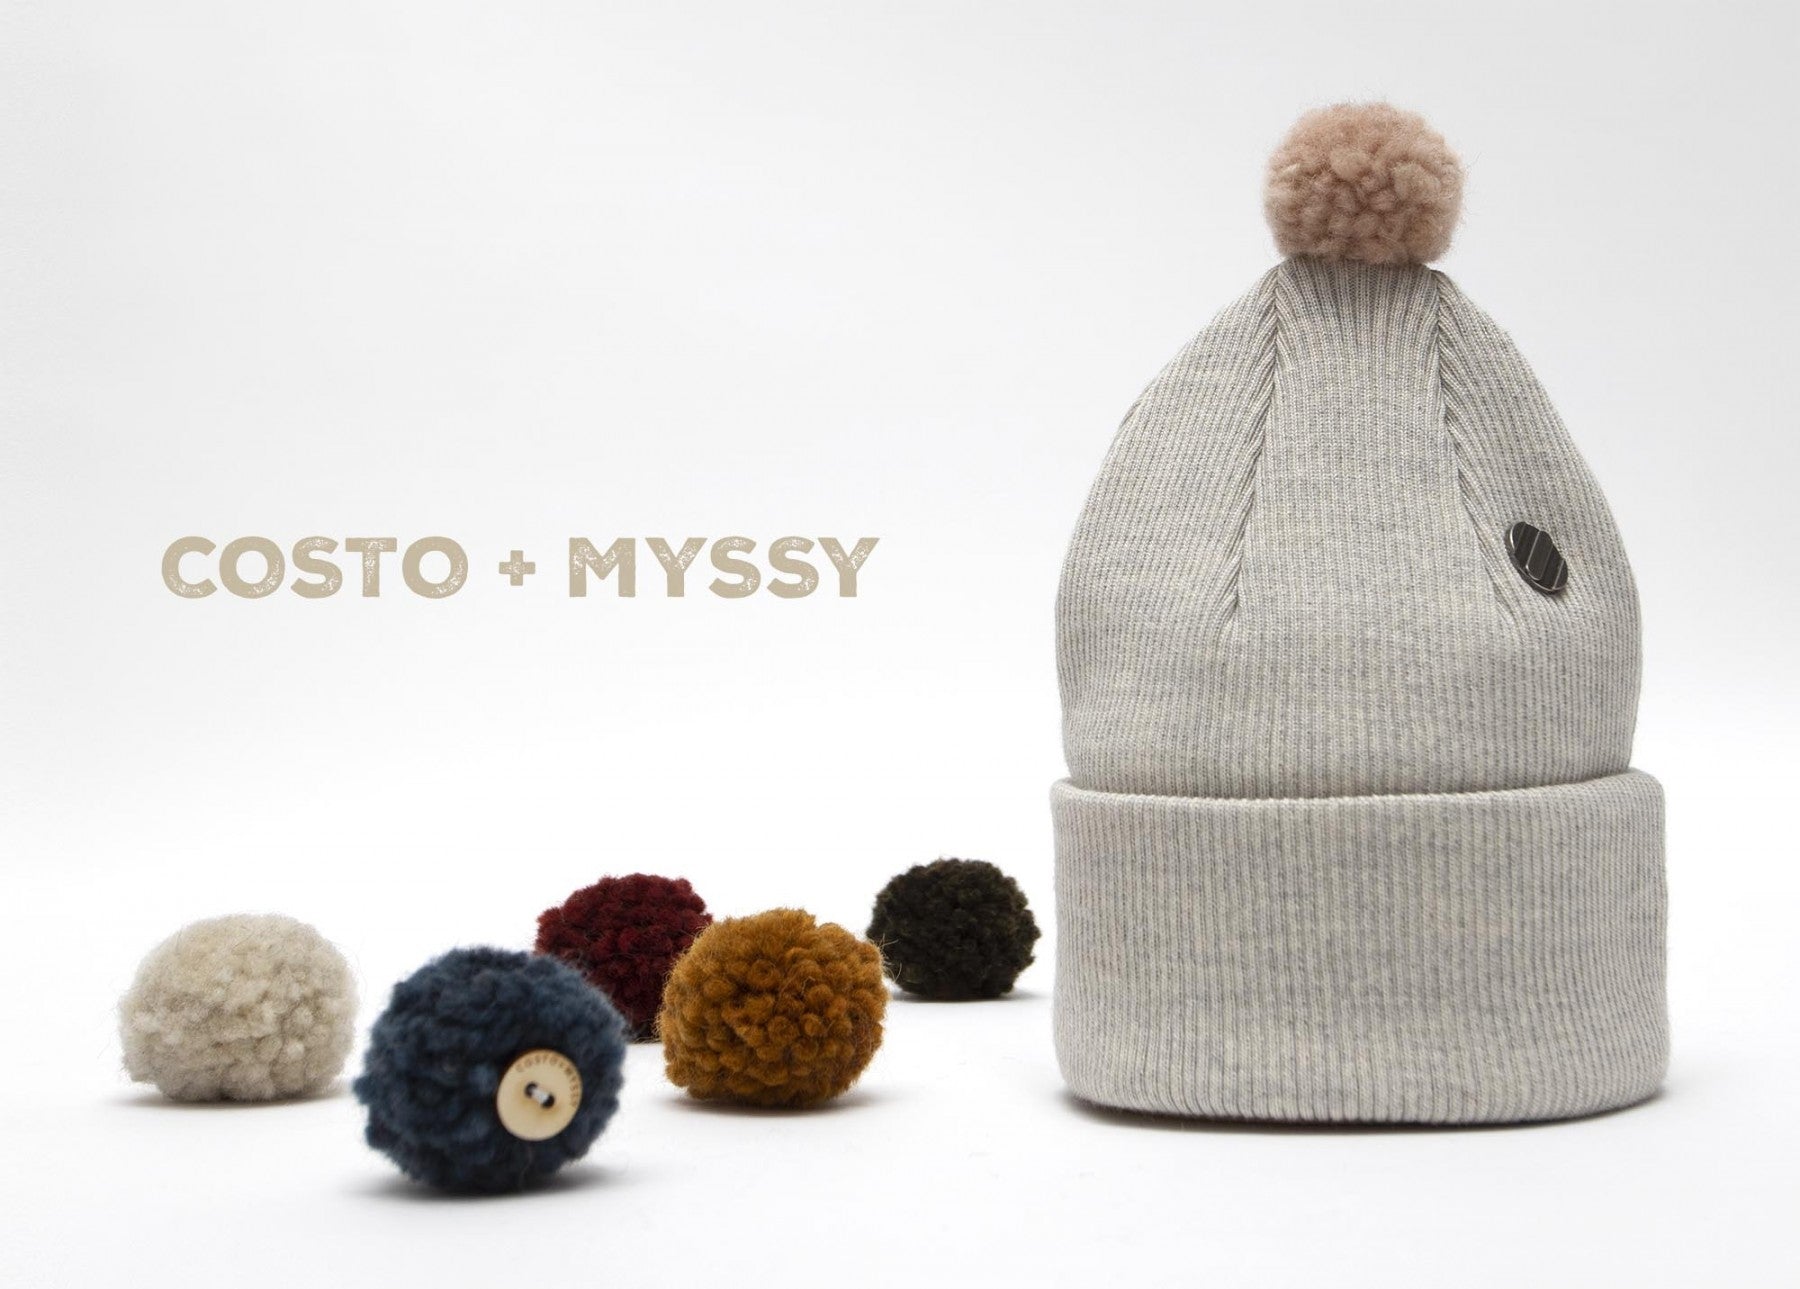 Myssy x Costo - Kilpailijoiden kollaboraatio!